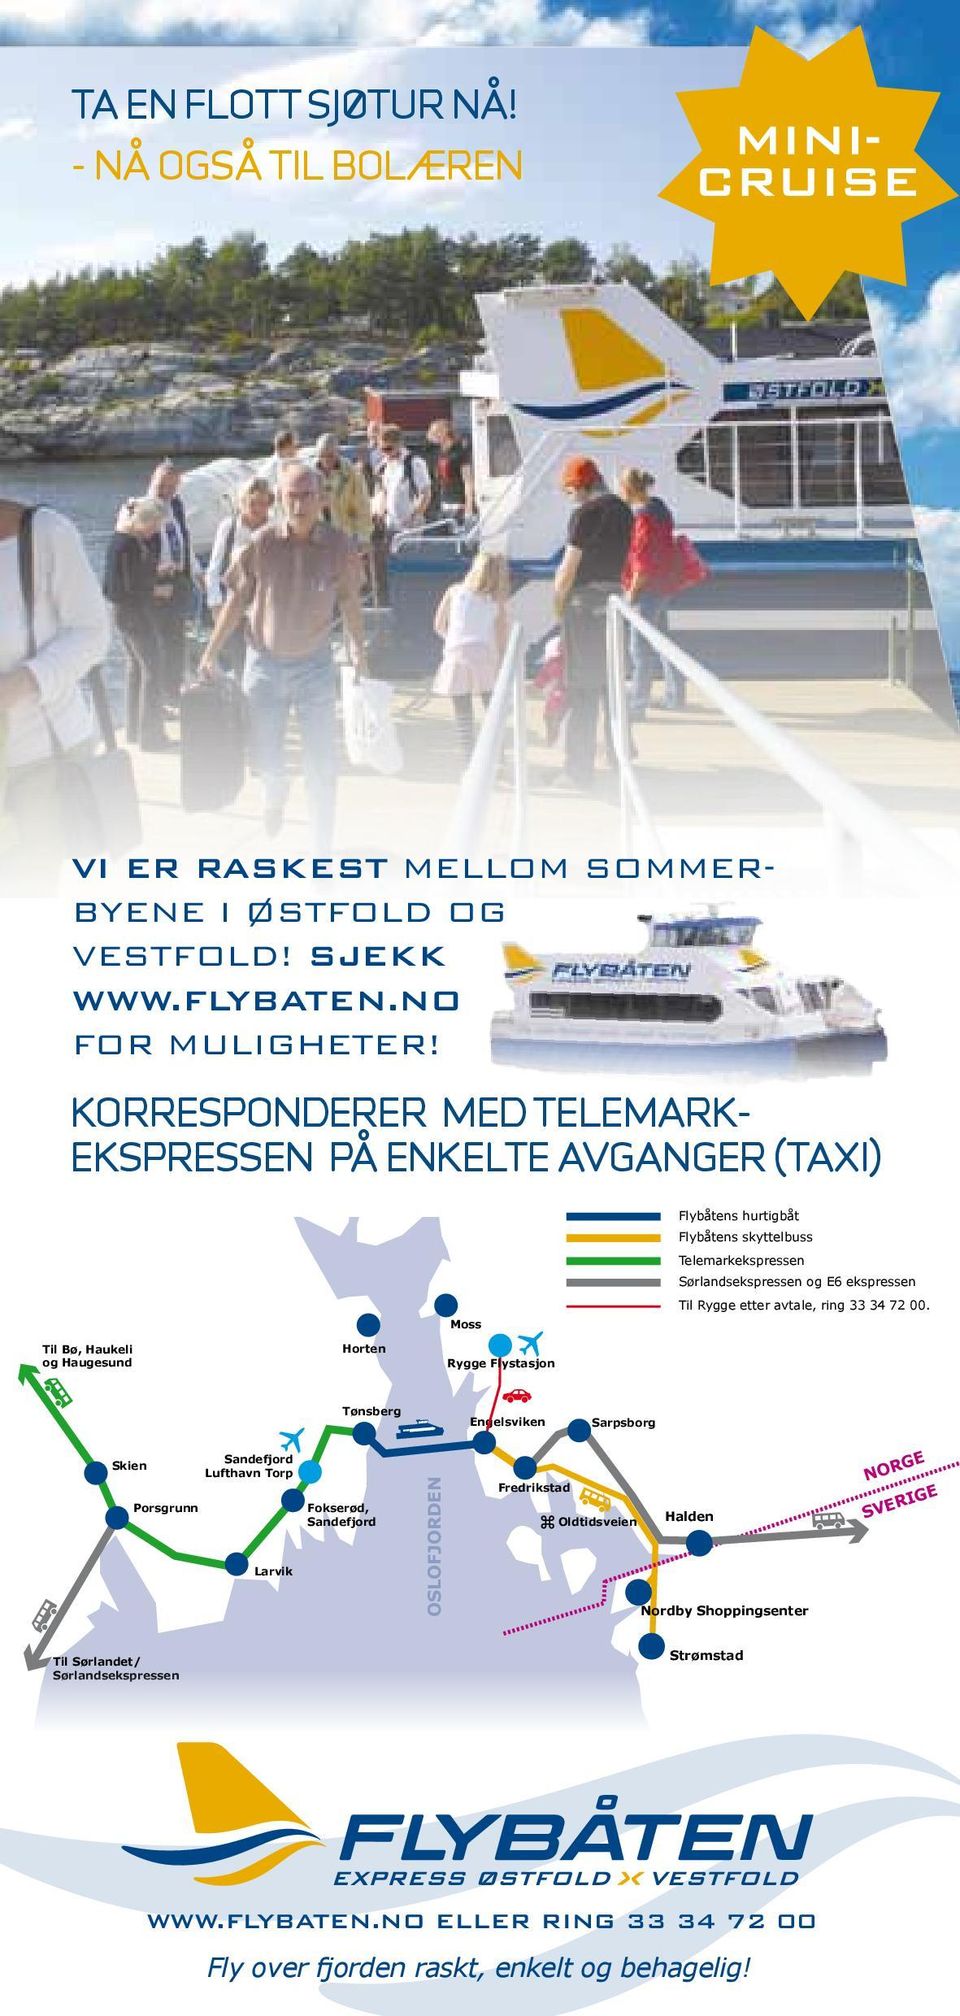 og Haugesund Rygge Flystasjon Sørlandsekspressen og E6 ekspressen www.flybaten.no eller ring 33 34 72 00 Til Rygge etter avtale, ring 33 34 72 00.